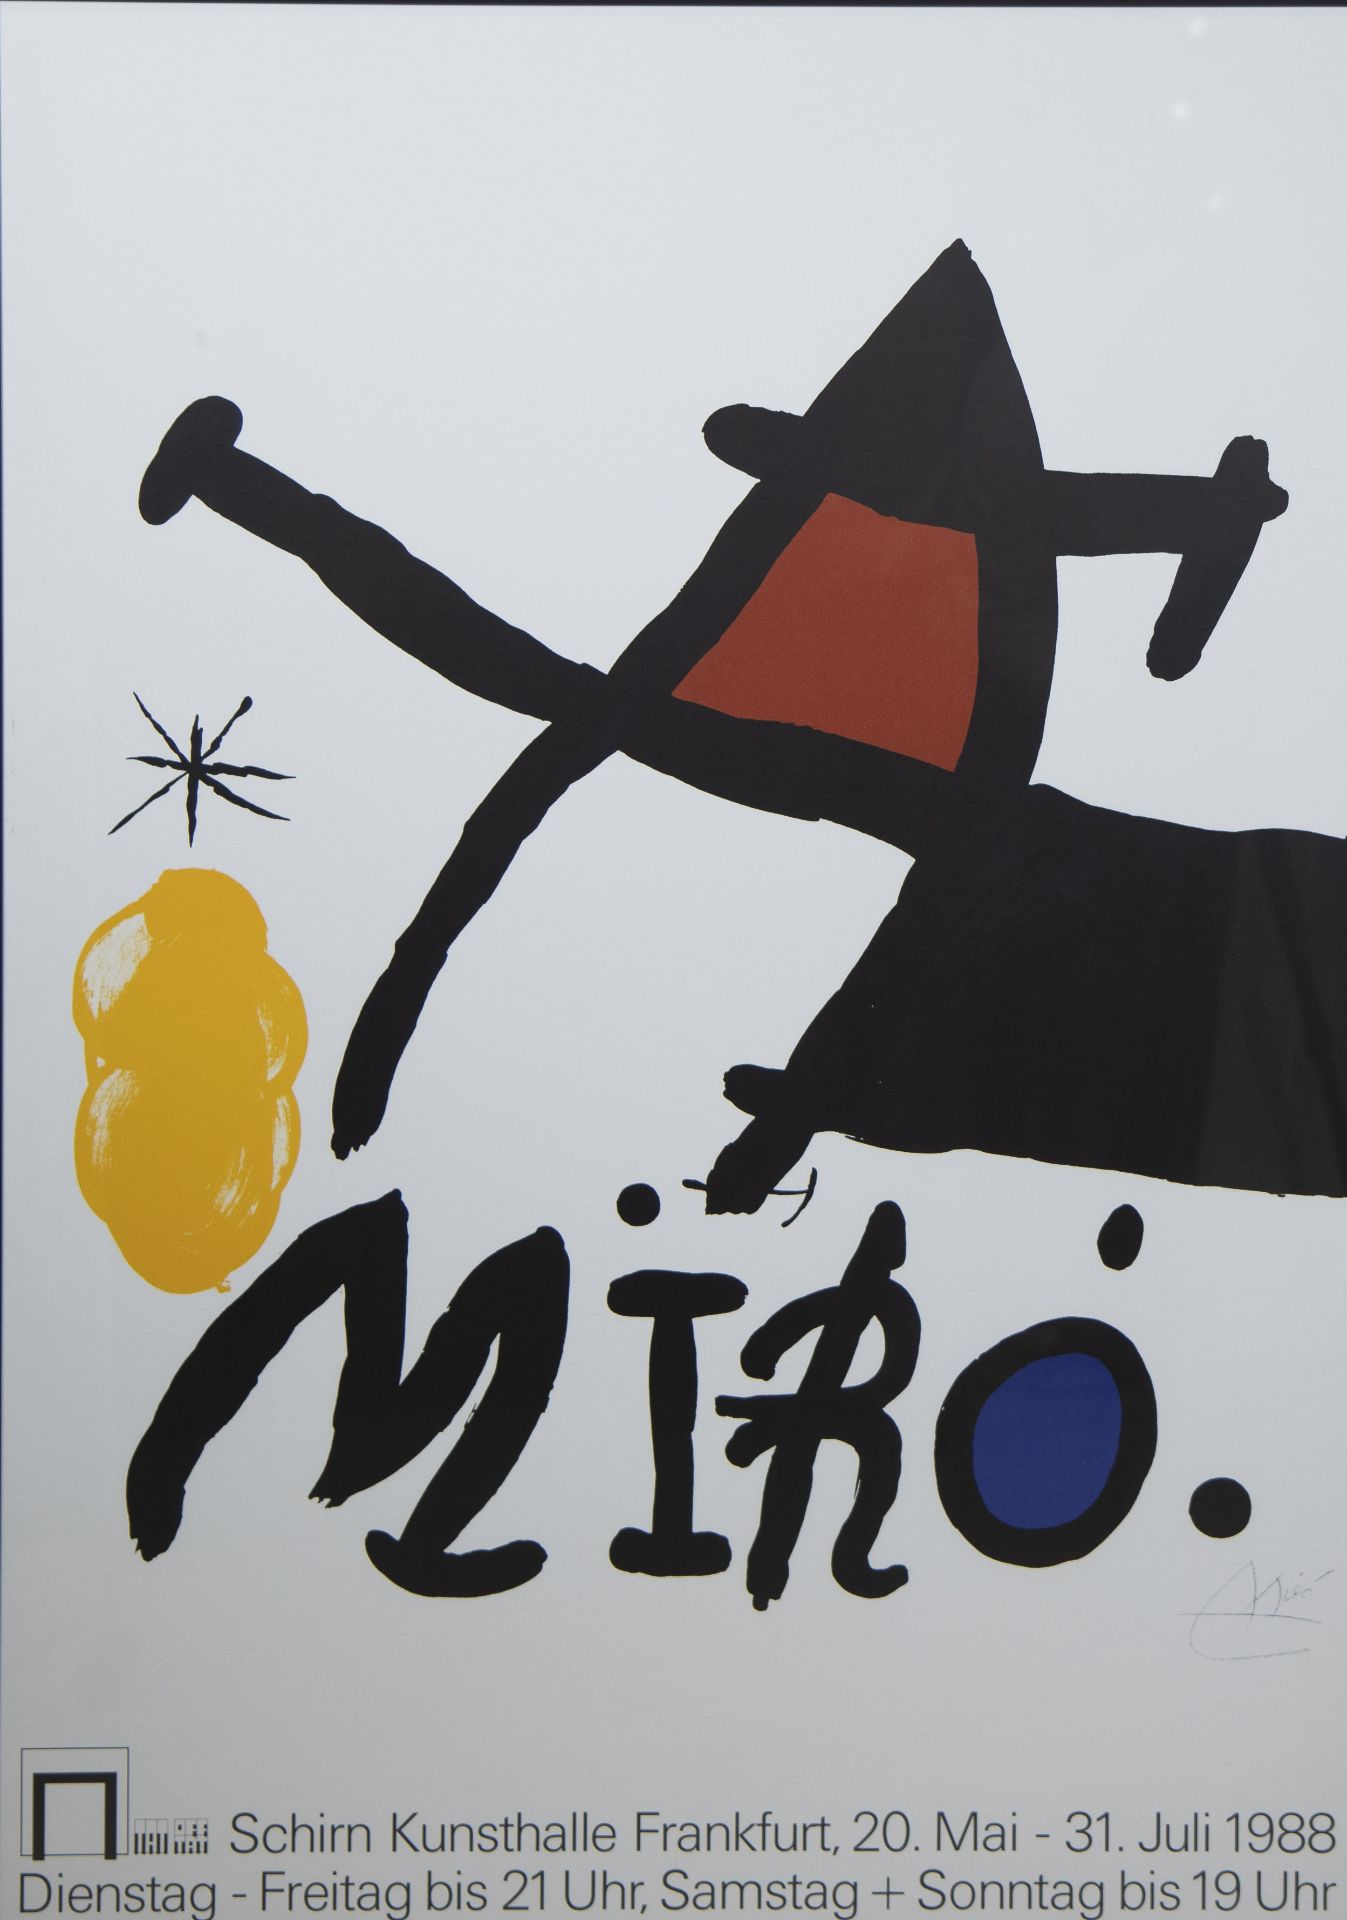 2 posters by Roy Lichtenstein 1964 and MIRO 1988, Schirn Kunsthalle Frankfurt, framed - Bild 3 aus 5